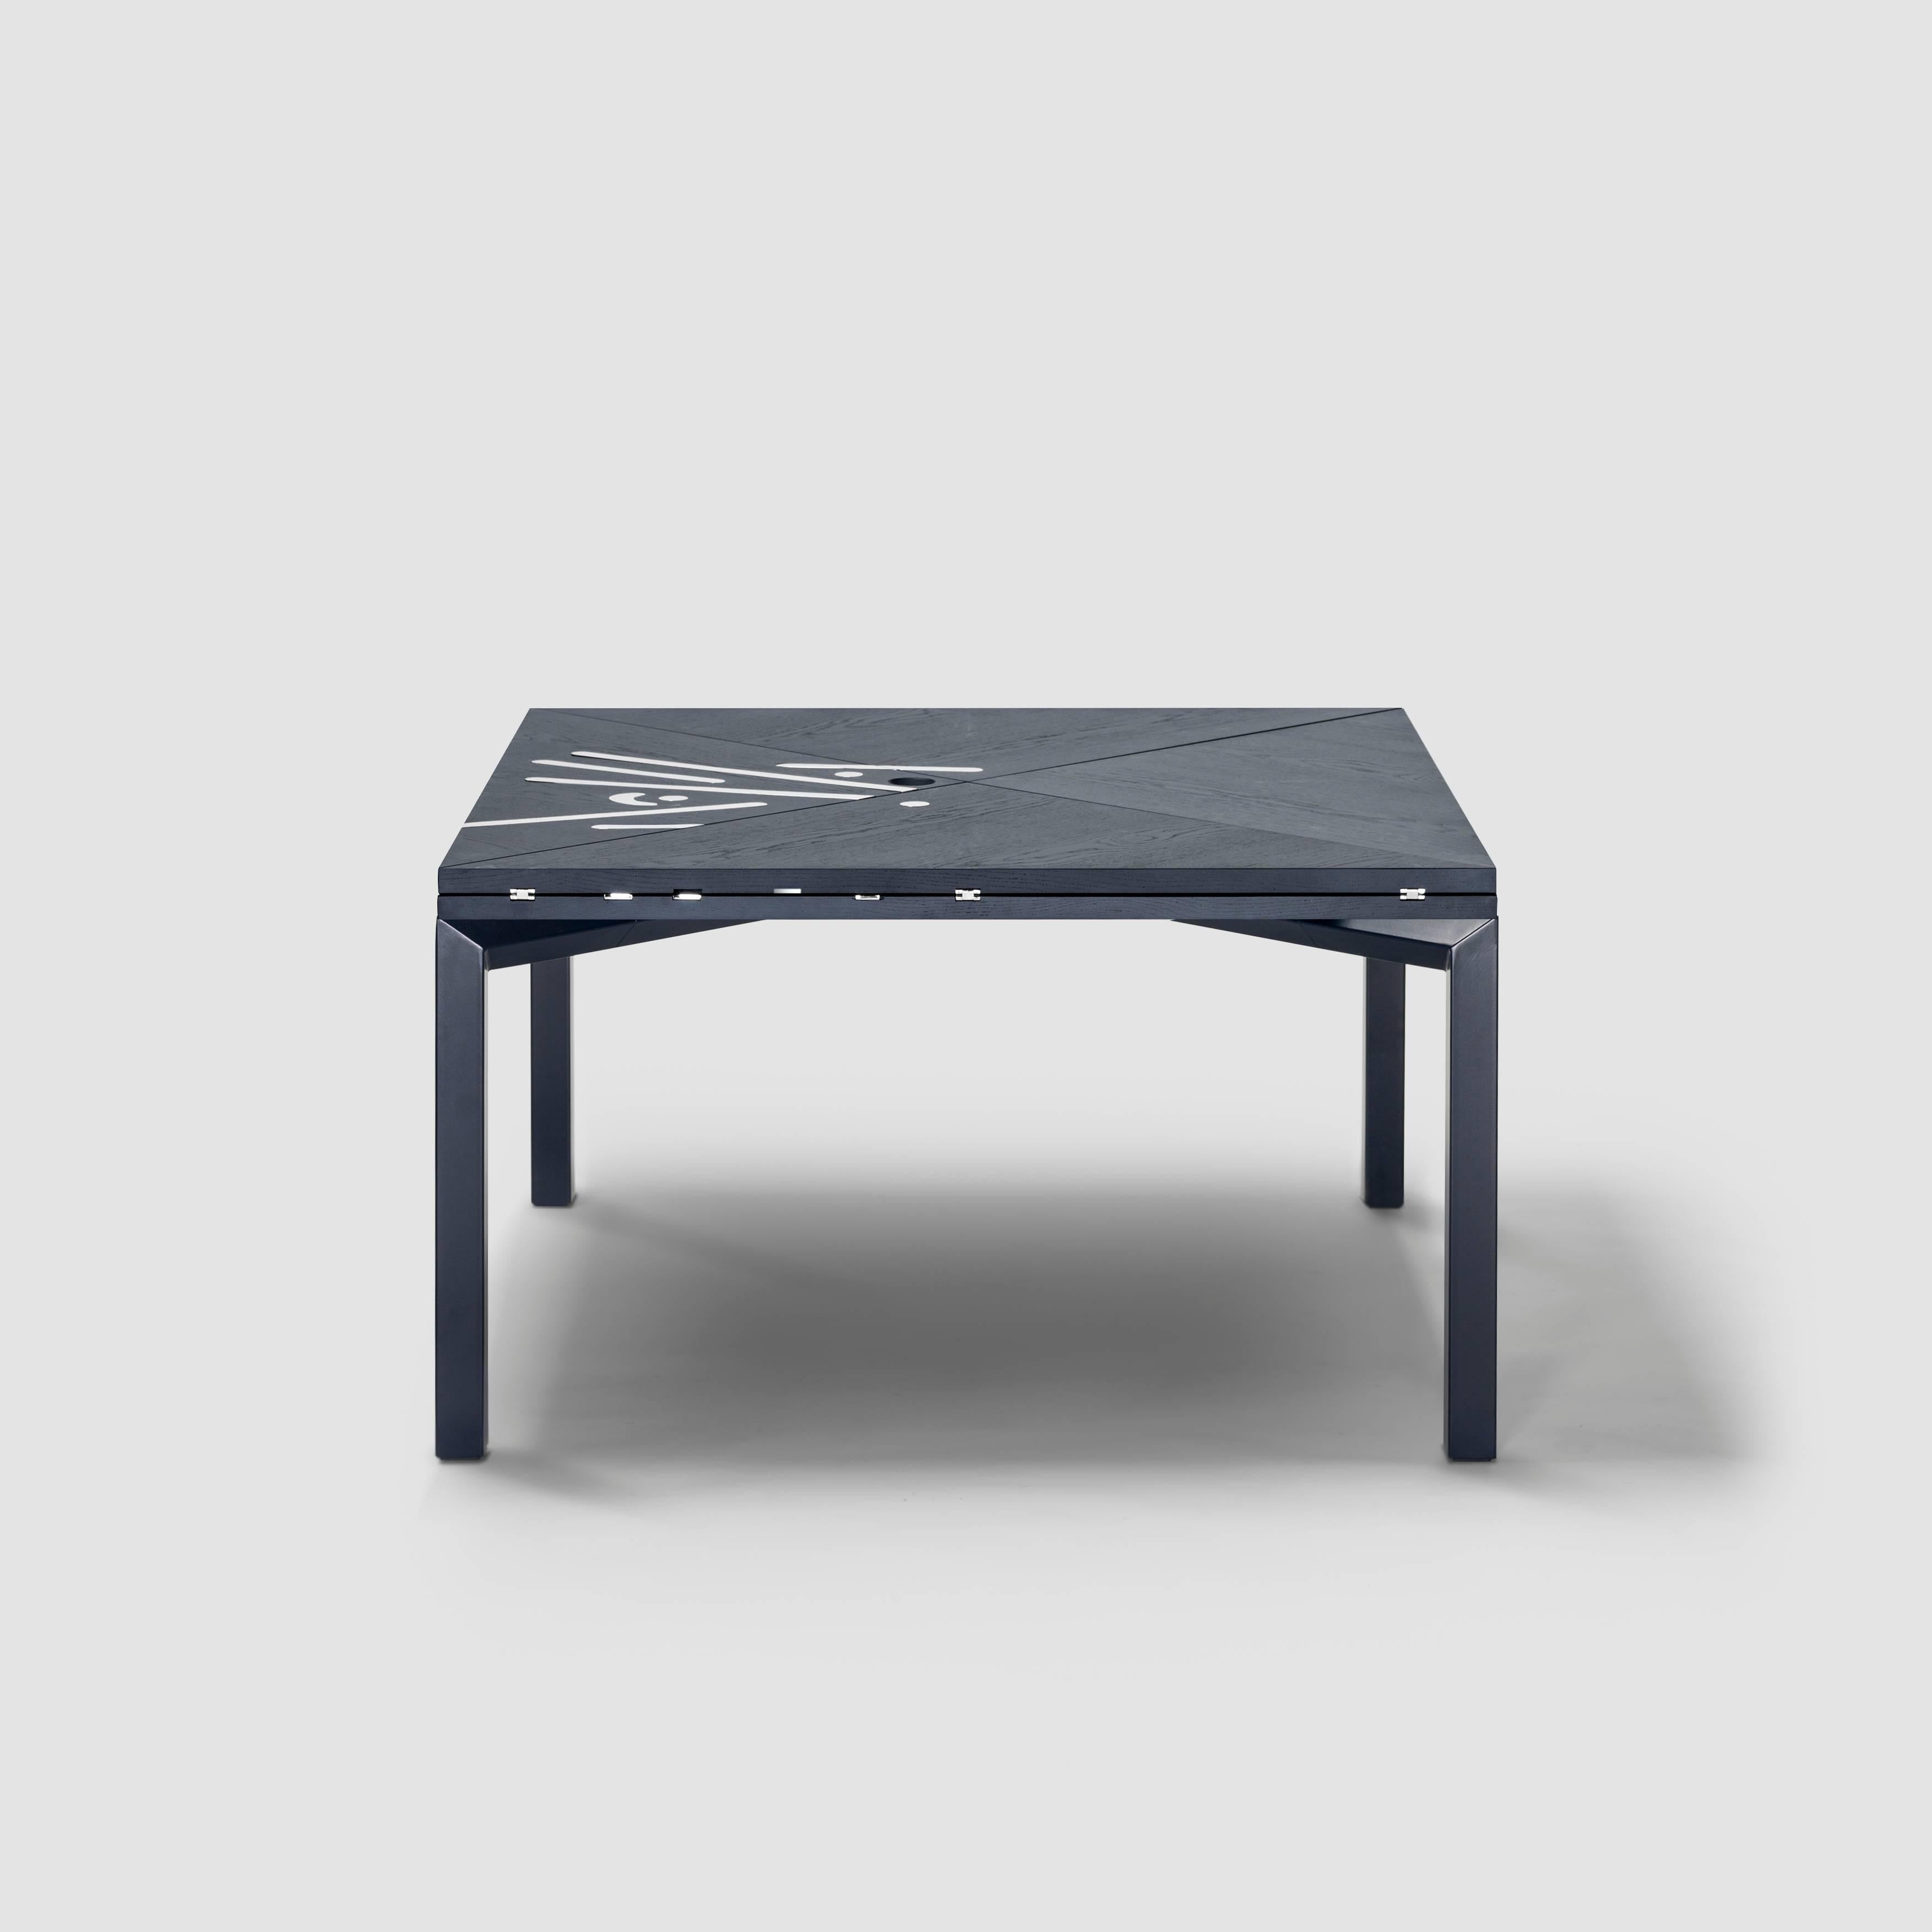 Tisch Alella von Lluís Clotet.

Limitierte Auflage von 8 Stück + 2 Probedrucke + 2 Prototypen.
DM, eichenfurniert und dunkelblau RAL 5004 gebeizt.
Beine aus einem Rechteckrohr aus Eisen, in der gleichen Farbe wie die Platte lackiert.
Dekorative